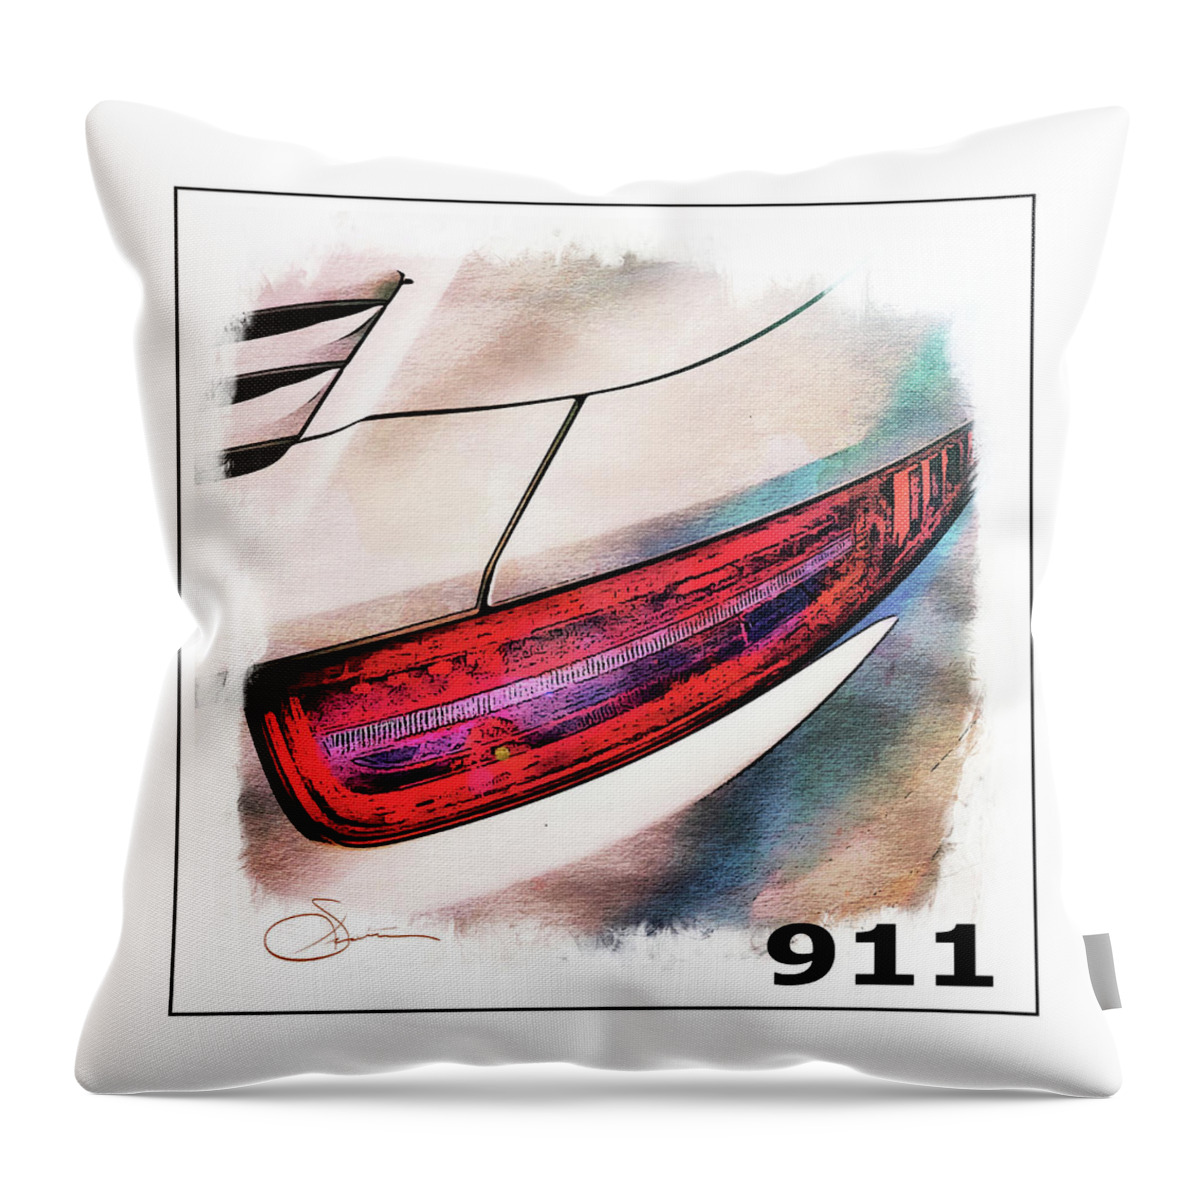 Porsche Throw Pillow featuring the digital art Porsche 911 #1 by Rob Smith's